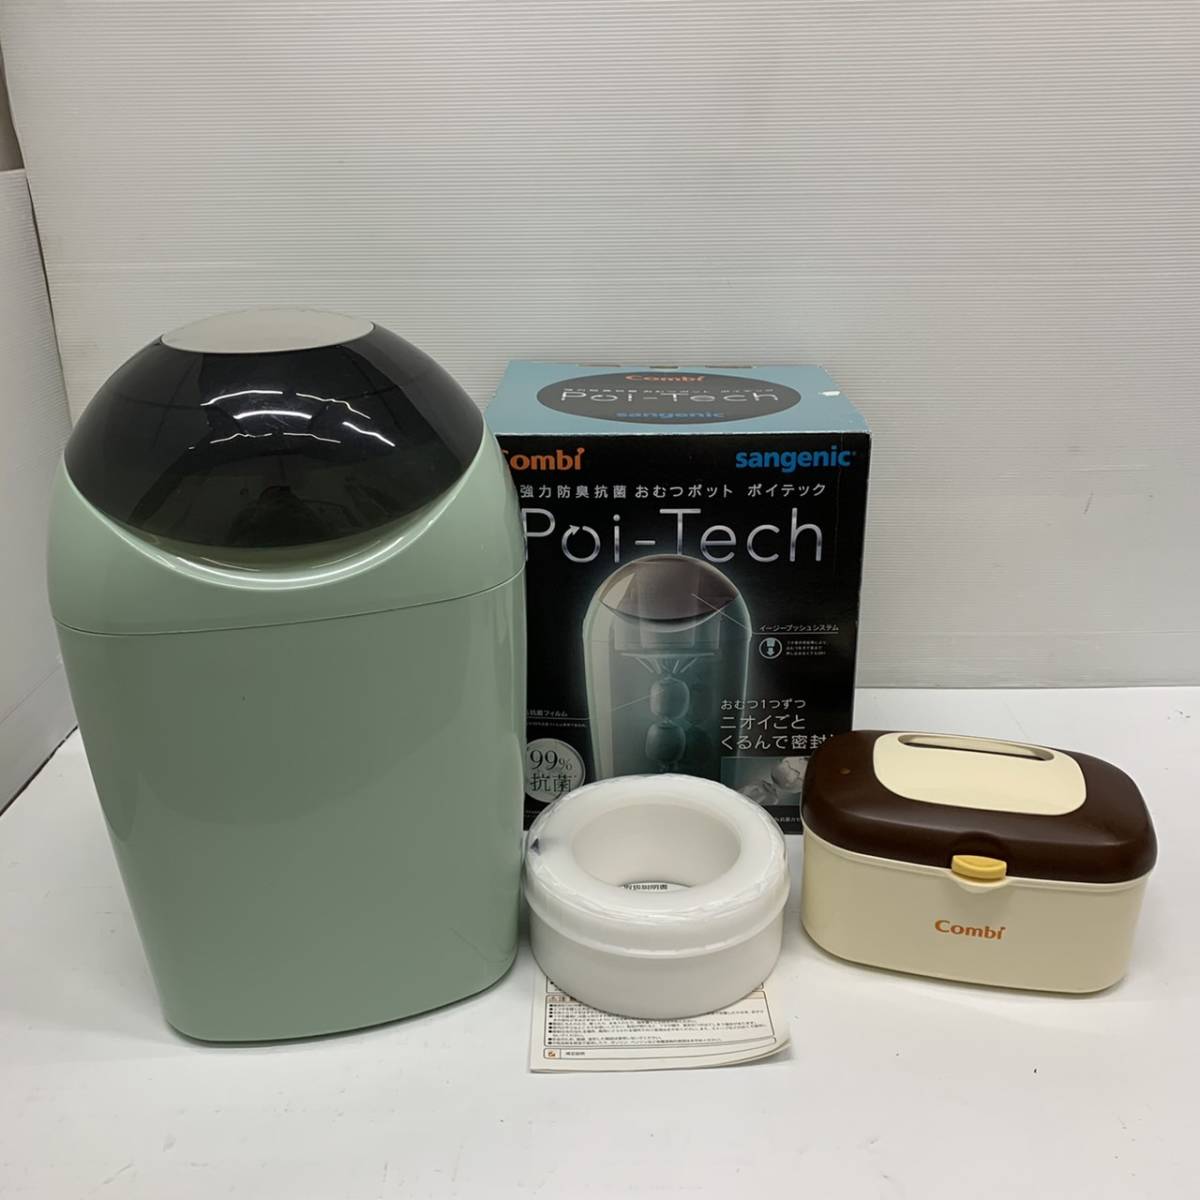  бесплатная доставка h49966 combi poi-tech мощный дезодорация антибактериальный подгузники pot картридж Quick утеплитель HU 3 позиций комплект 